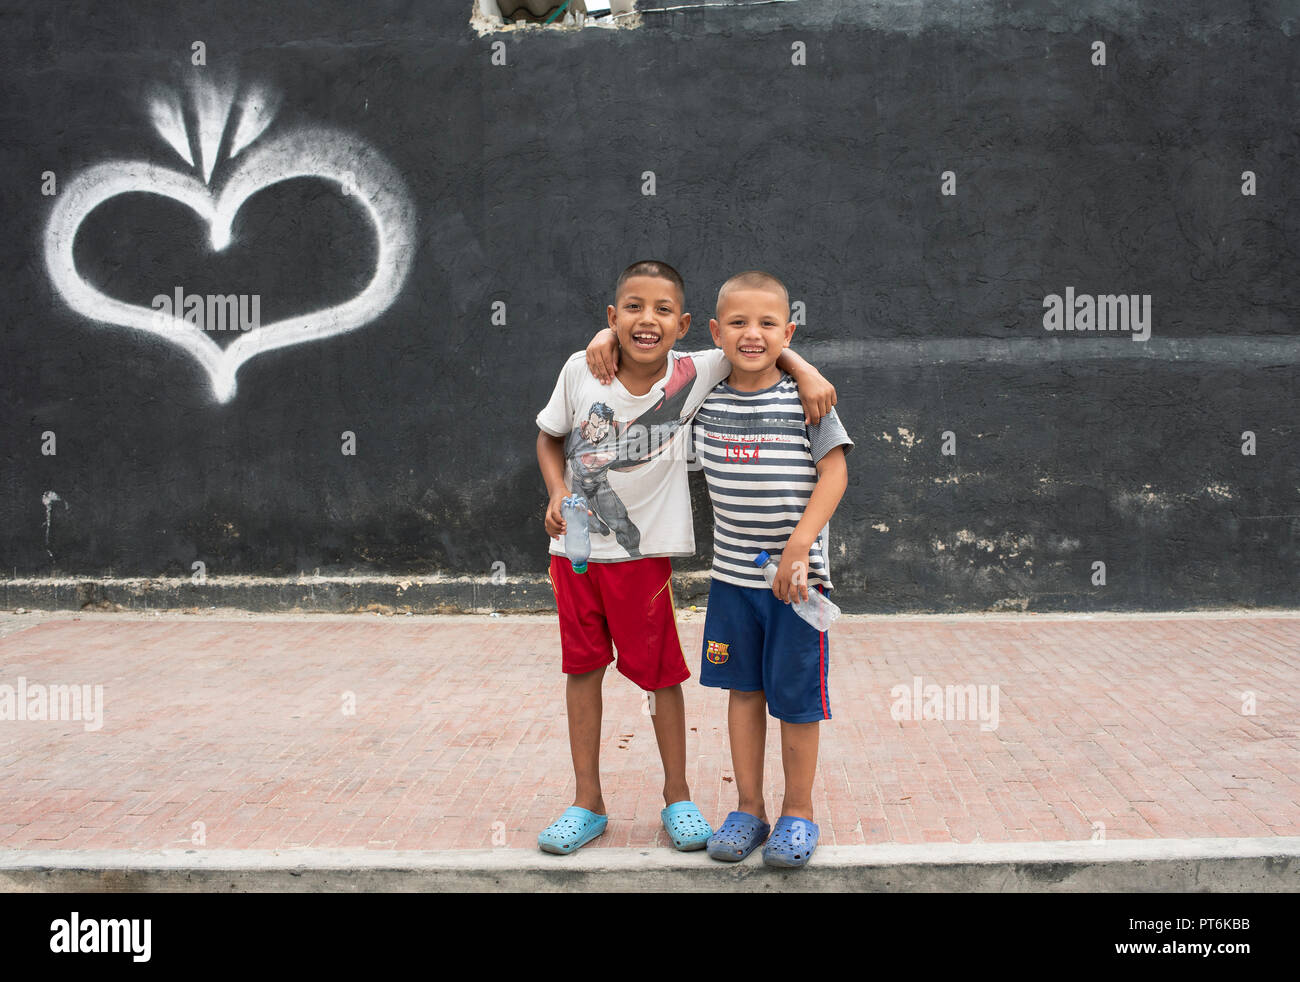 Zwei fröhliche Jungs umarmen sich freundlich mit einem großen Lächeln und leeren Plastikflaschen in den Händen. Santa Marta, Kolumbien. September 2018 Stockfoto